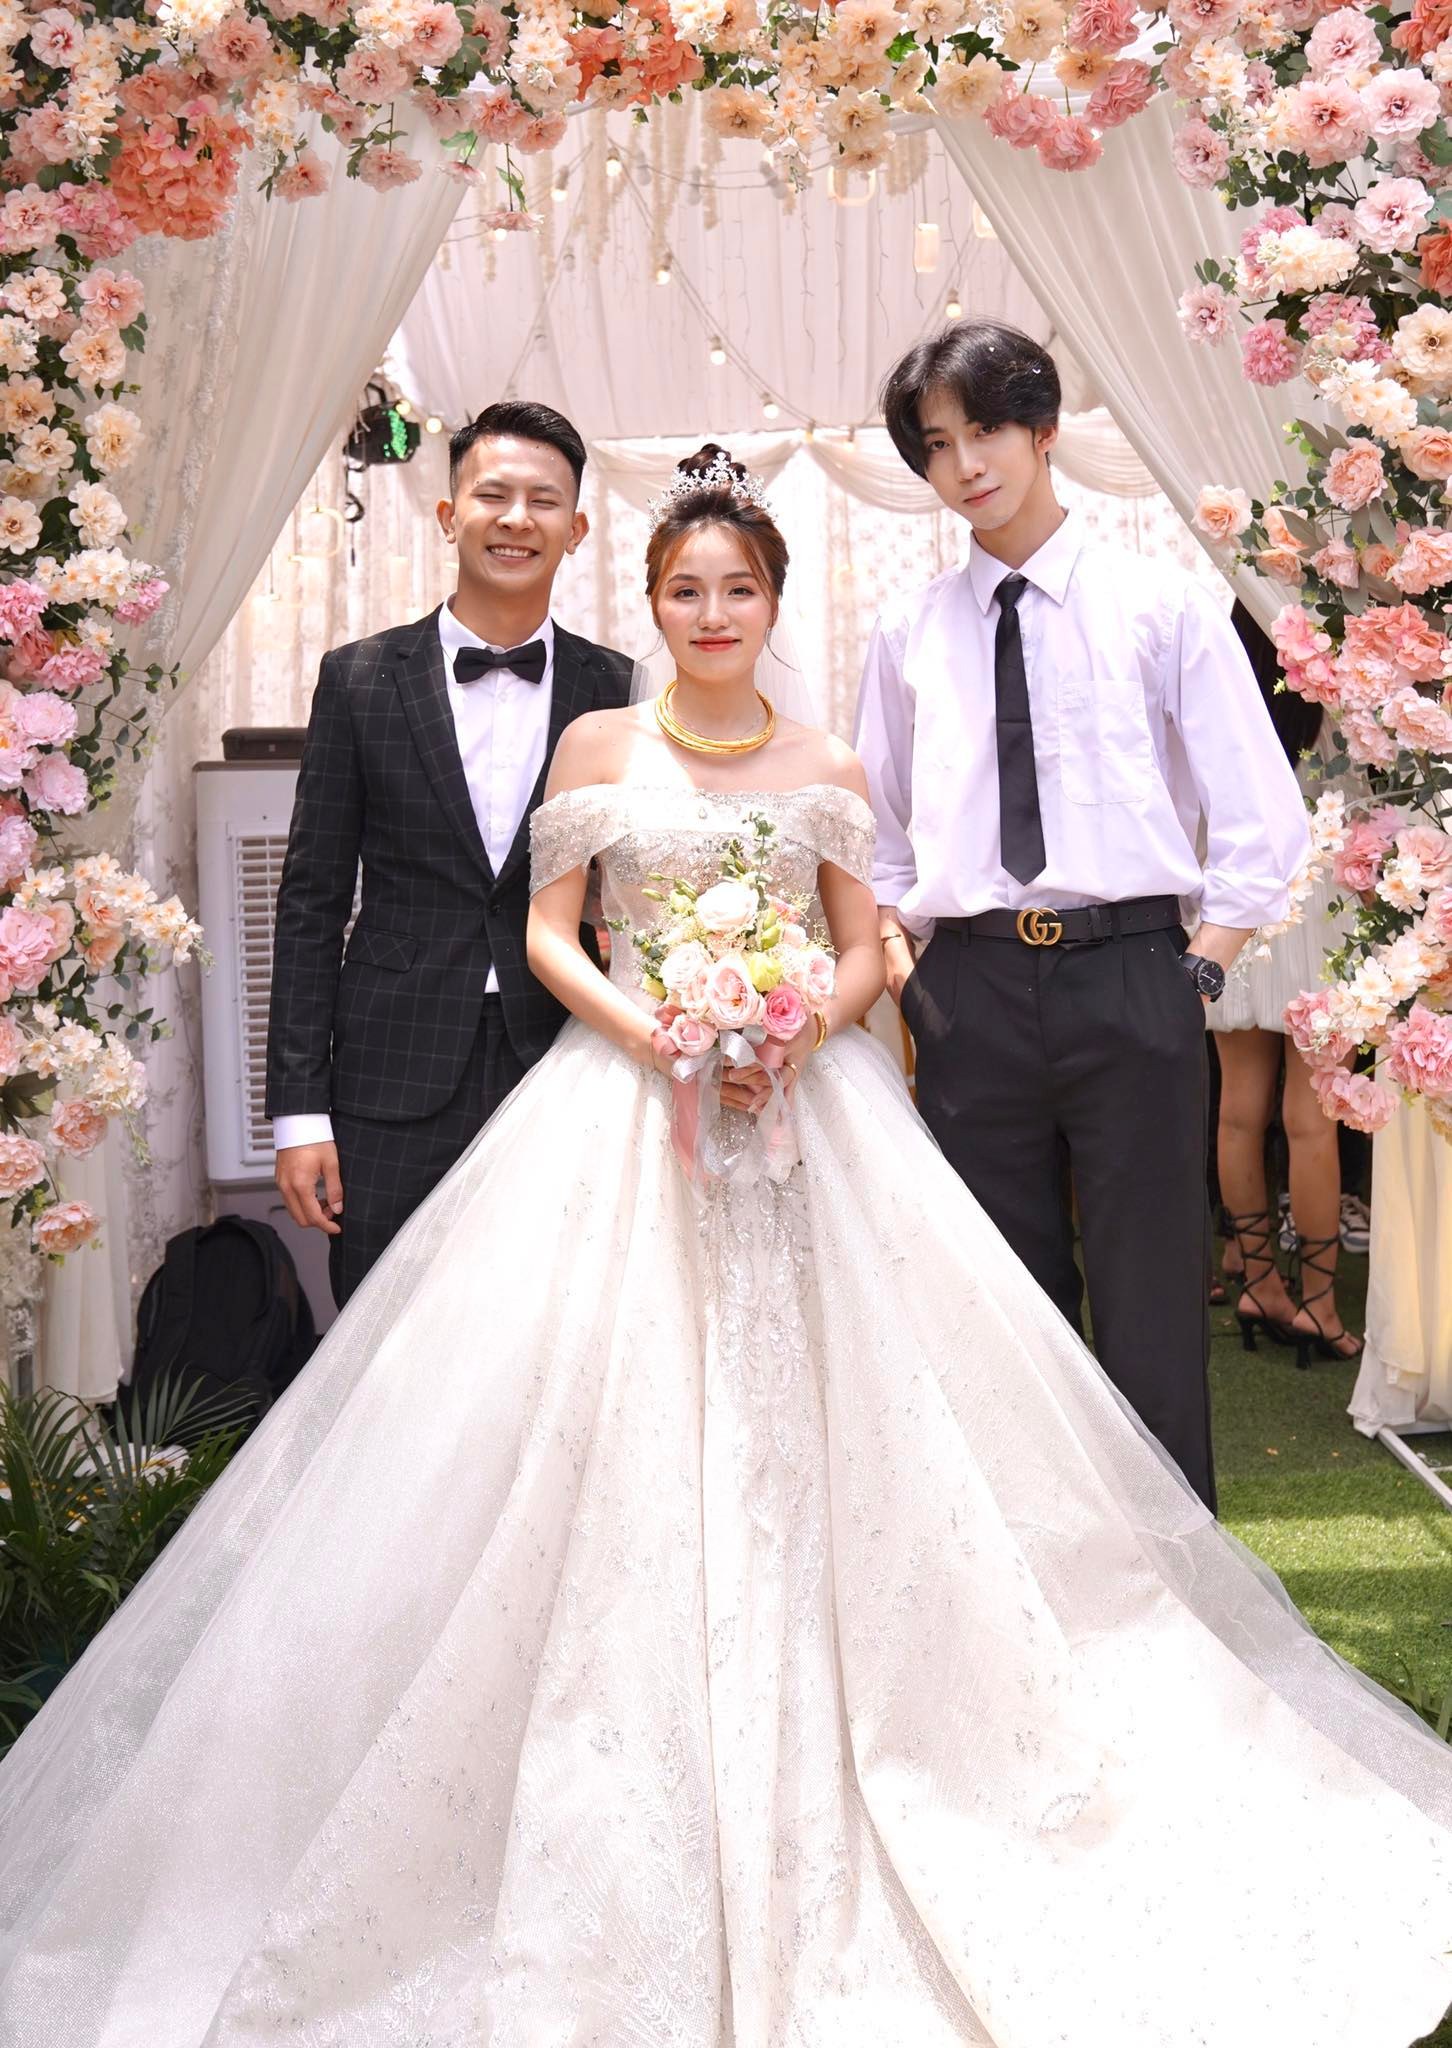 Hãy cùng ngắm nhìn bộ ảnh cưới của cặp đôi Nhung Tuấn đầy lãng mạn và tràn đầy tình yêu thương. Chắc chắn bạn sẽ bị cuốn hút bởi những khoảnh khắc đáng nhớ trong ngày trọng đại của họ.